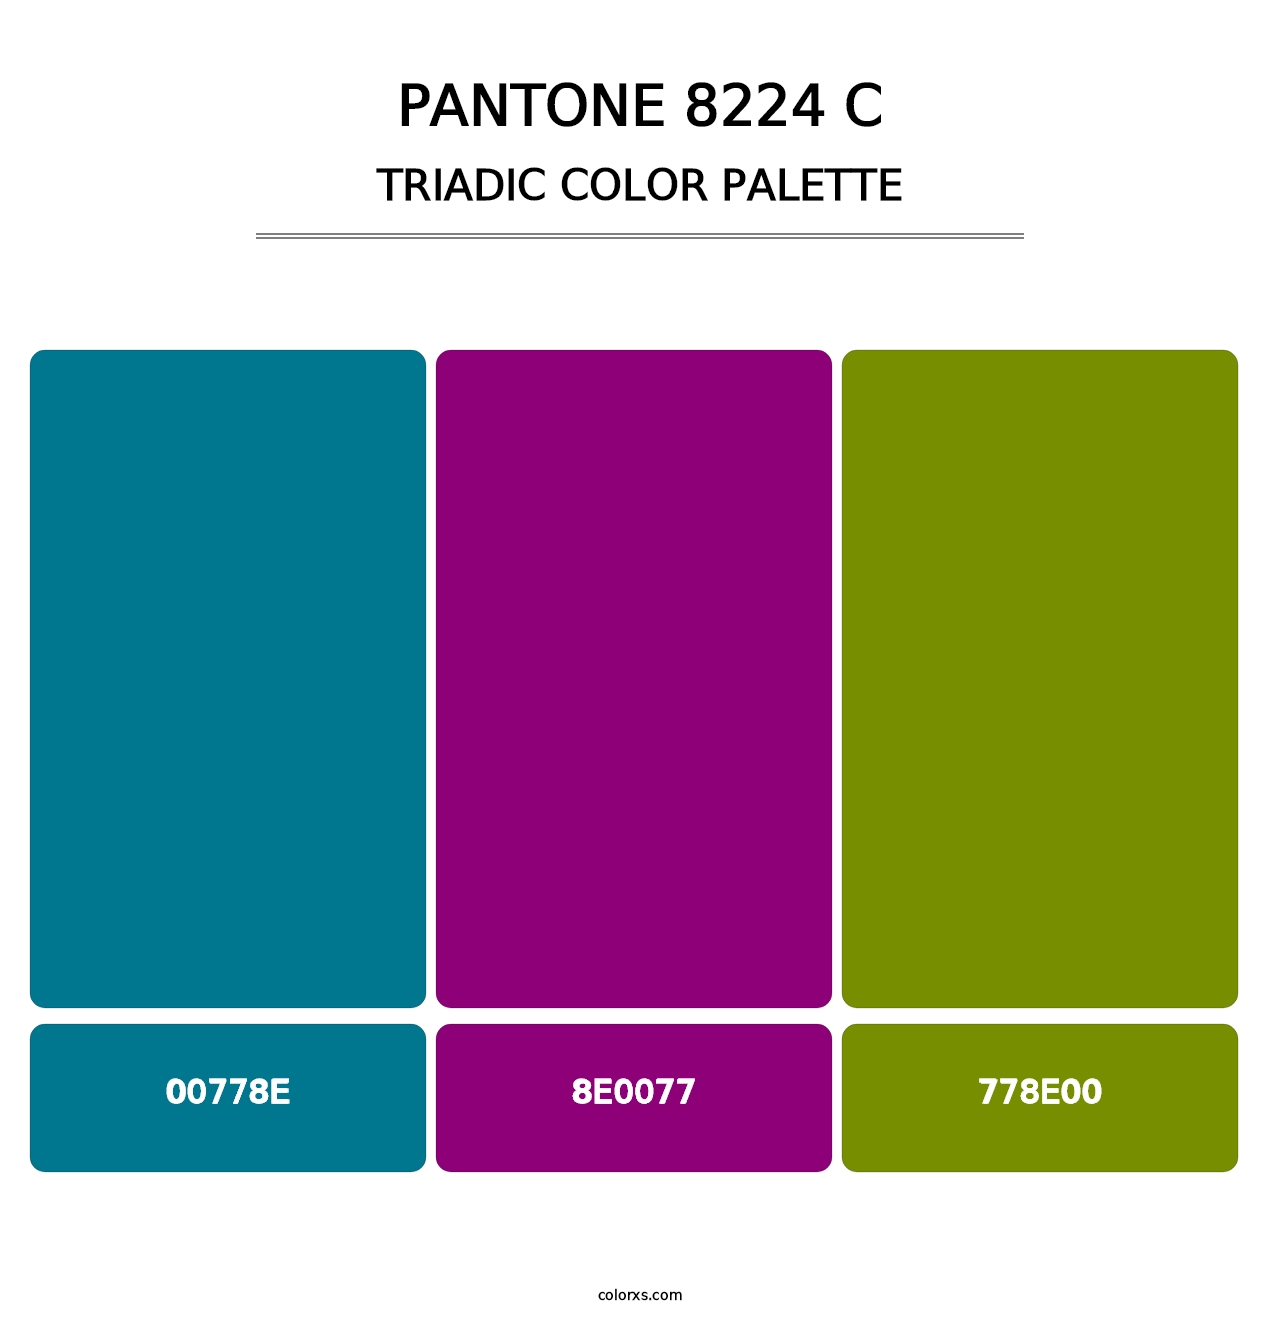 PANTONE 8224 C - Triadic Color Palette